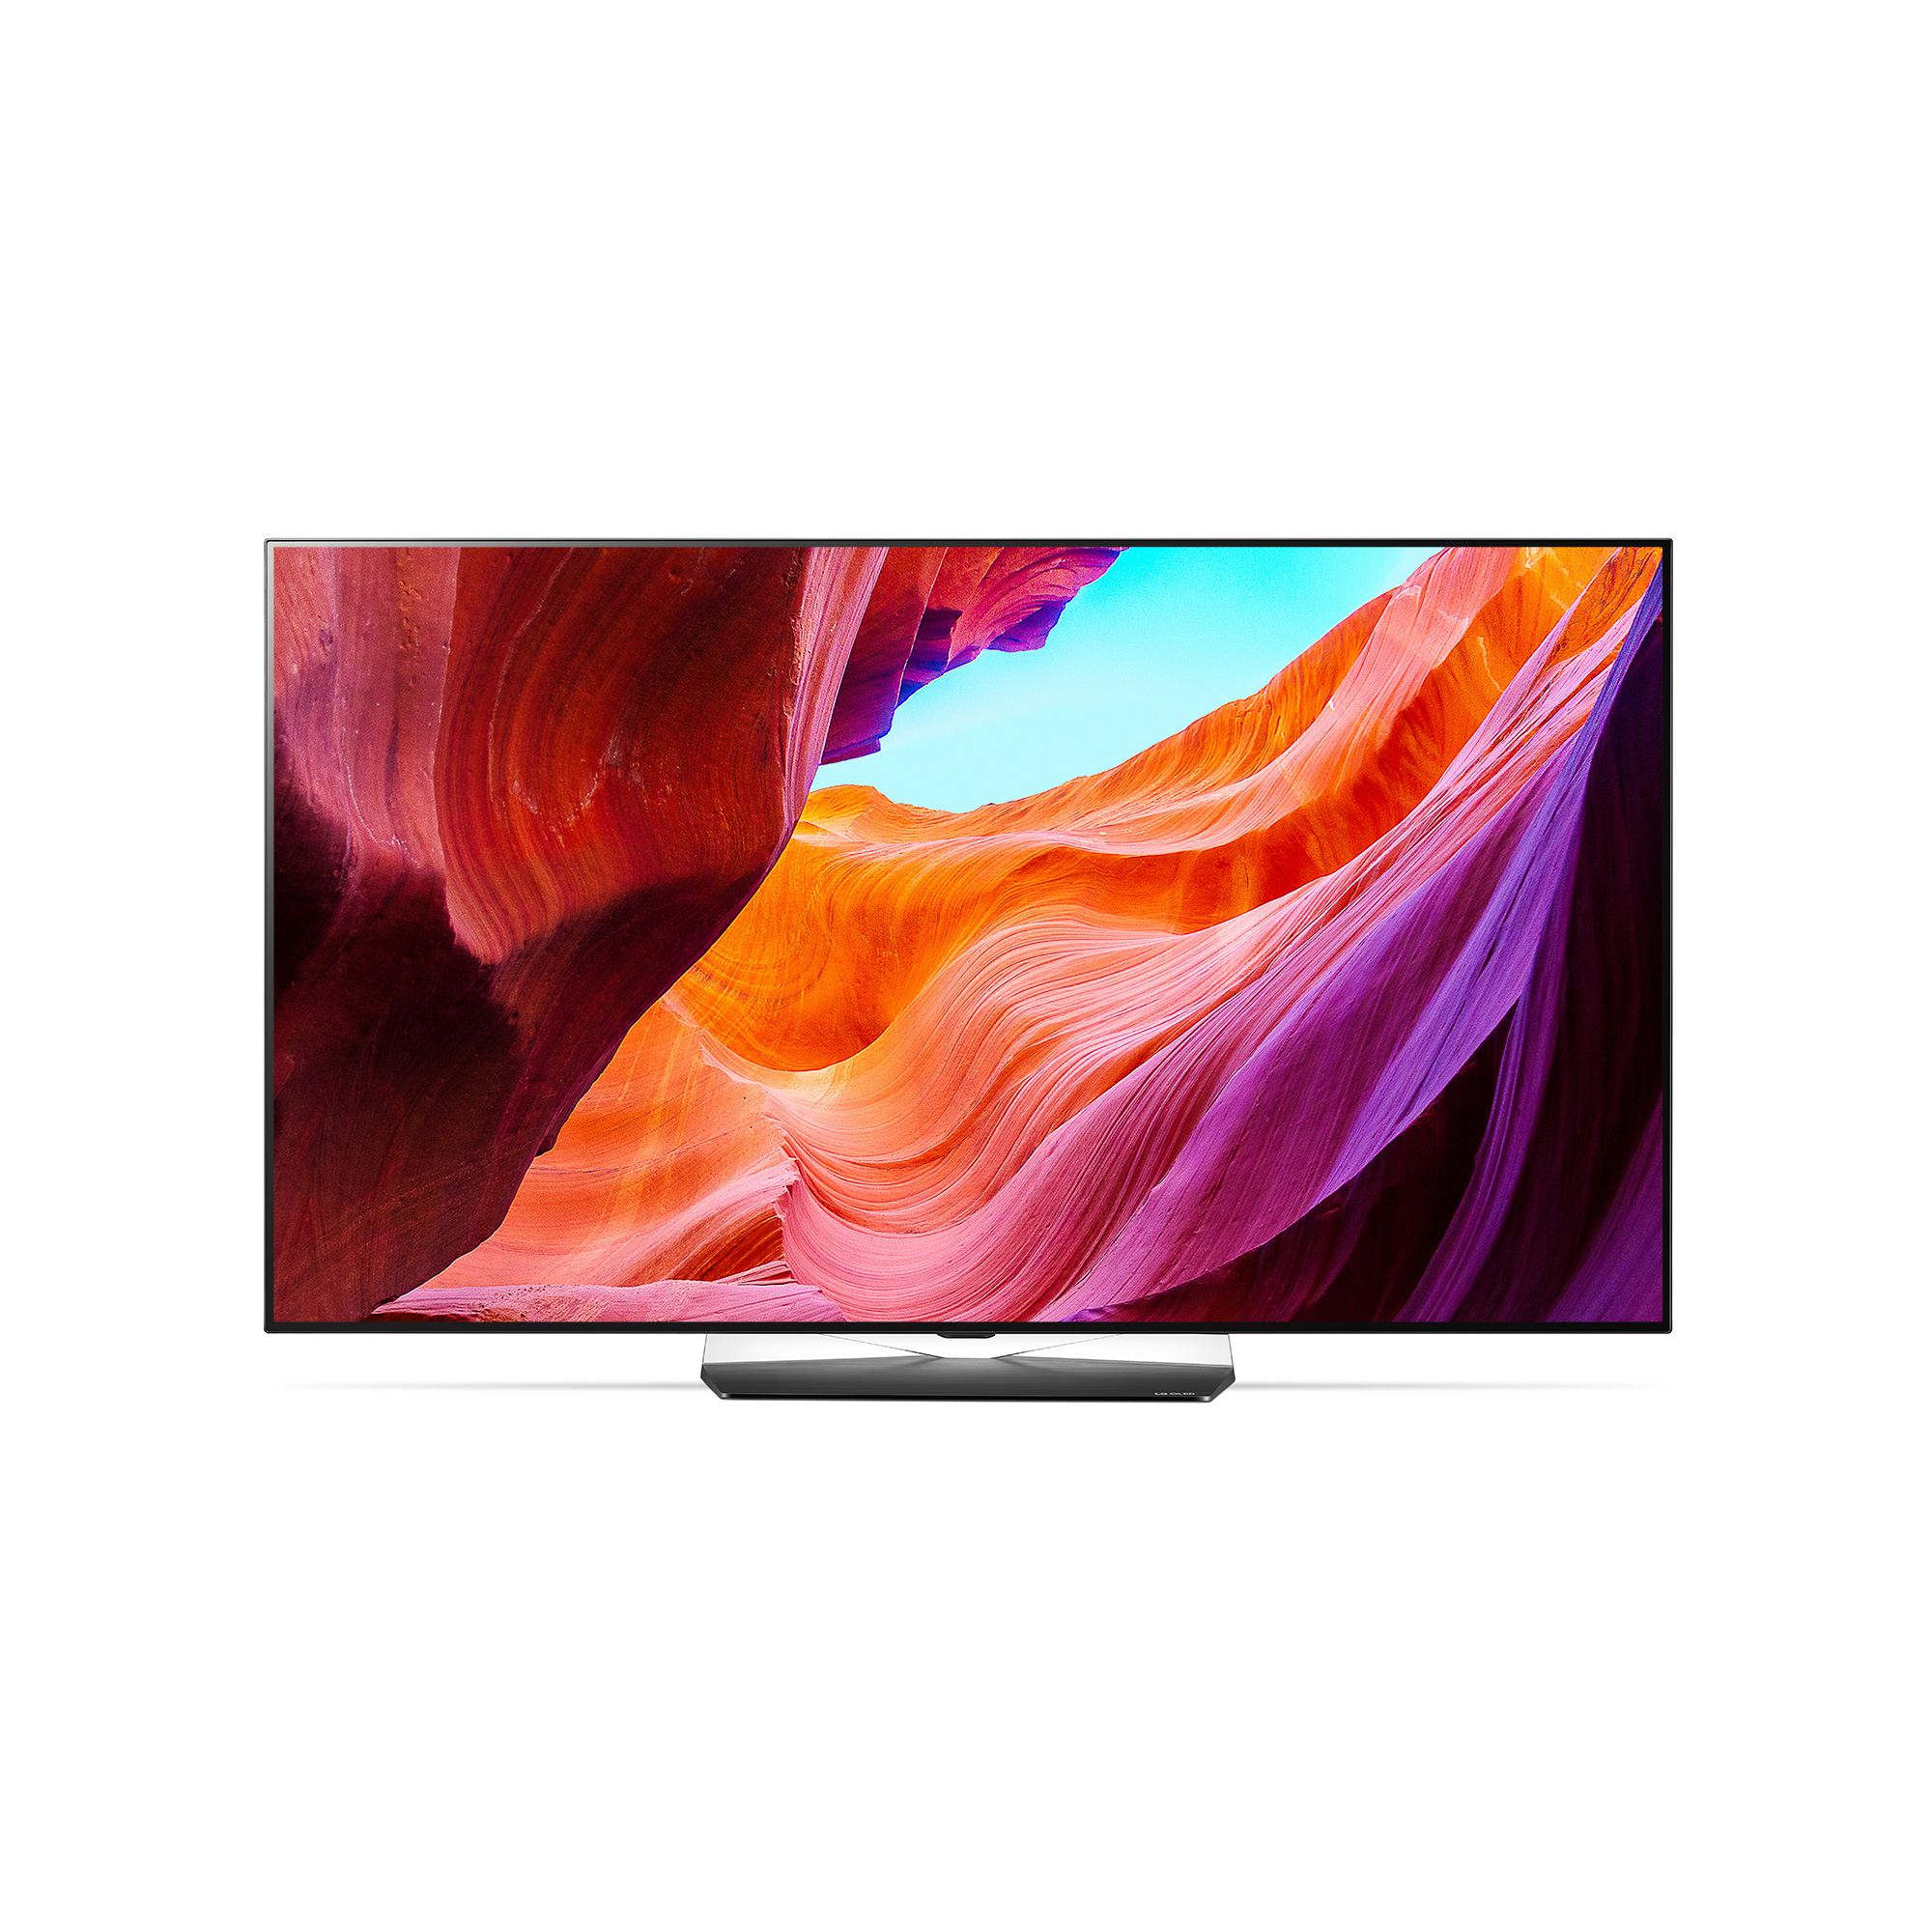 행사기간 동안 399만원에 구입 가능한 LG 올레드 TV 제품(OLED65B8CNA) 이미지